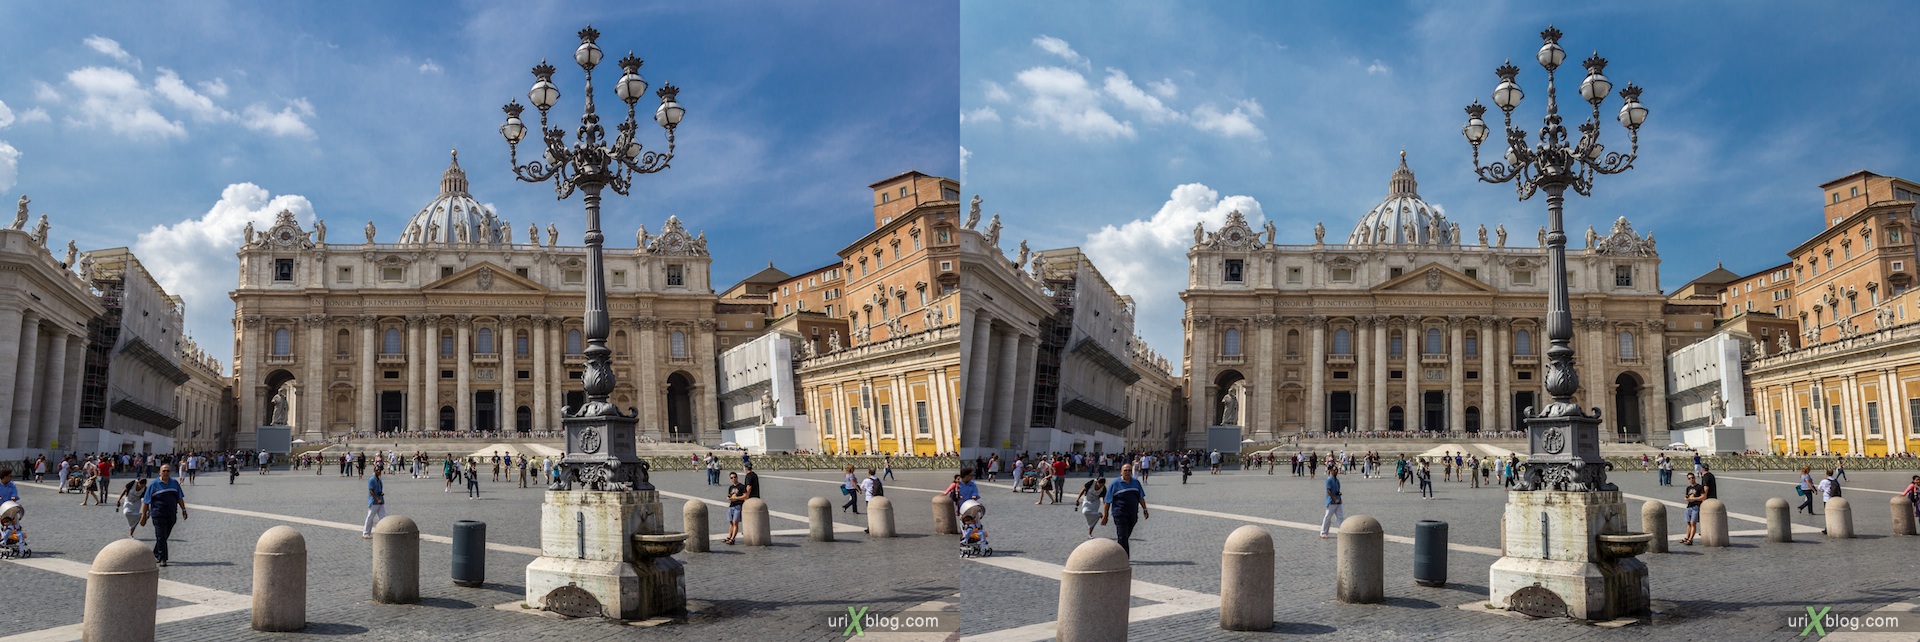 2012, Площадь Святого Петра, Ватикан, Рим, Италия, 3D, перекрёстные стереопары, стерео, стереопара, стереопары